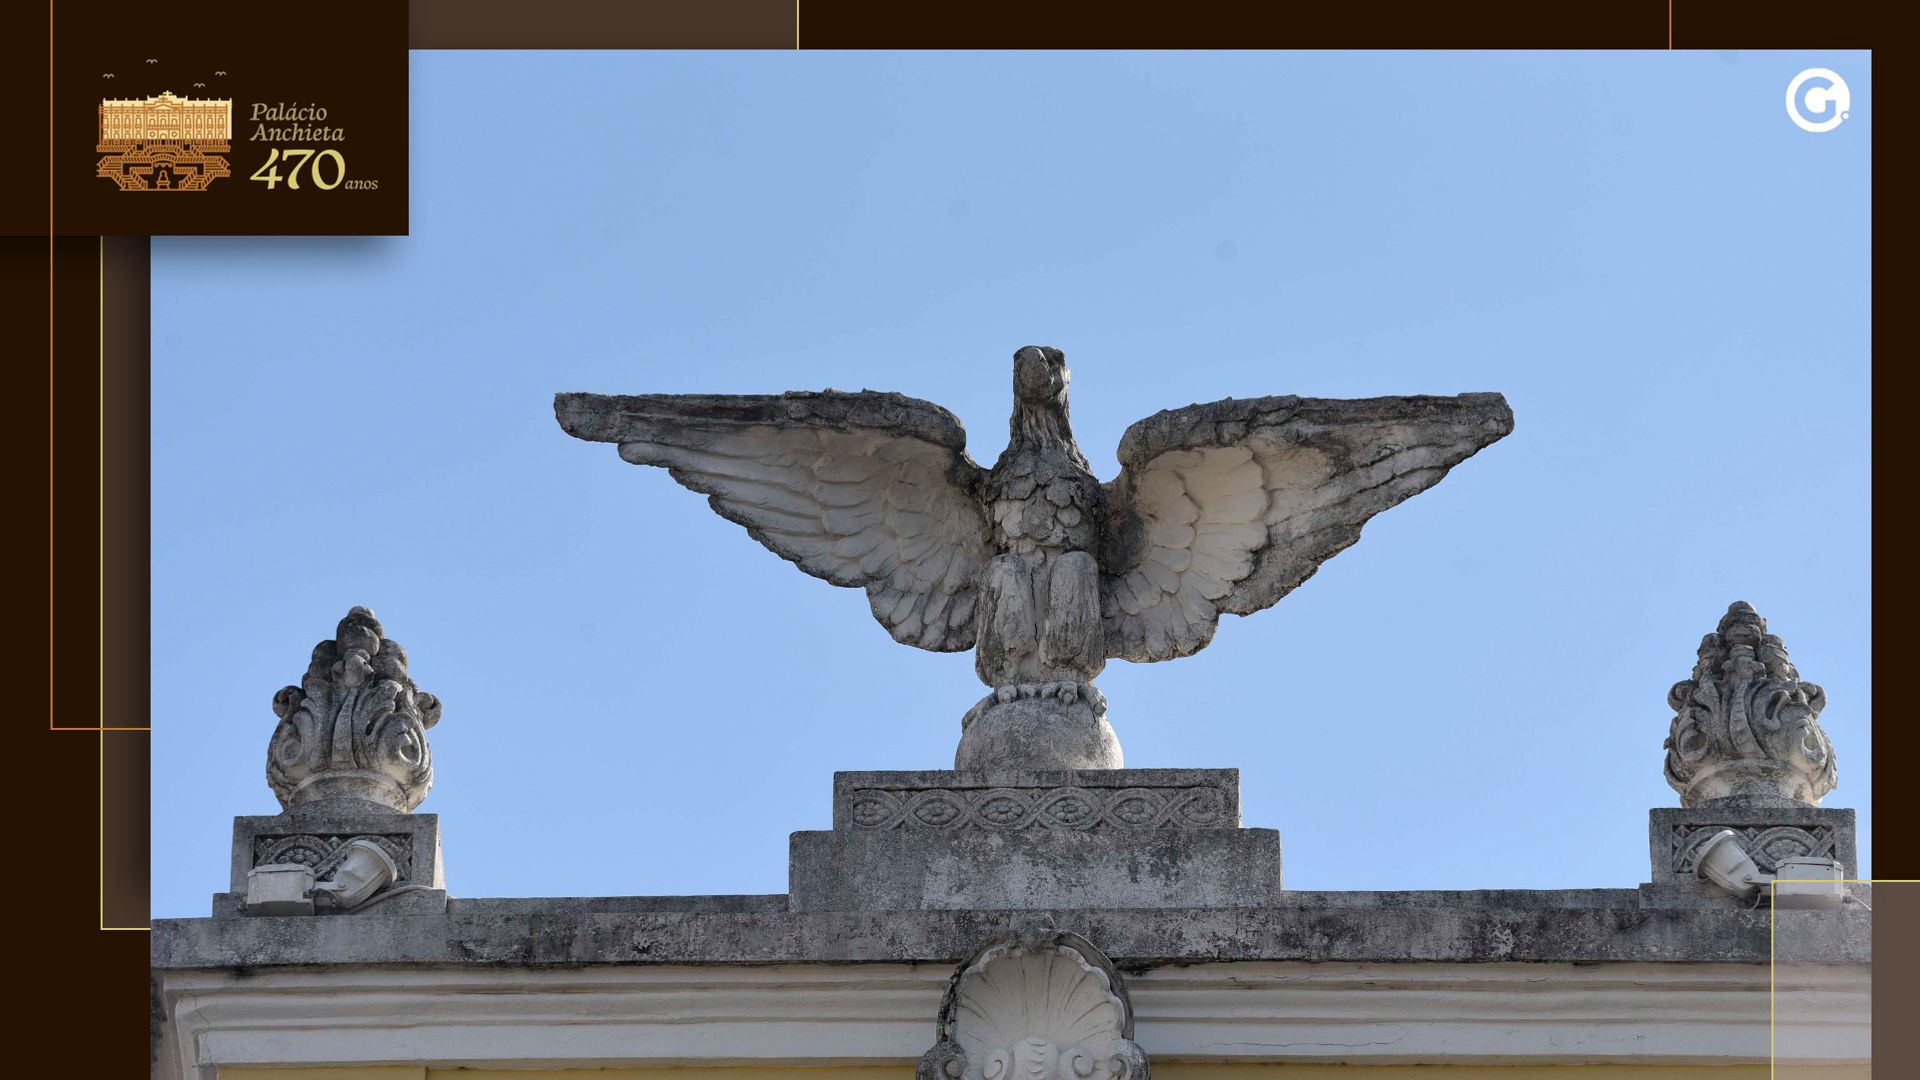 Águia localizada no topo do Palácio Anchieta representa proteção e vigilância